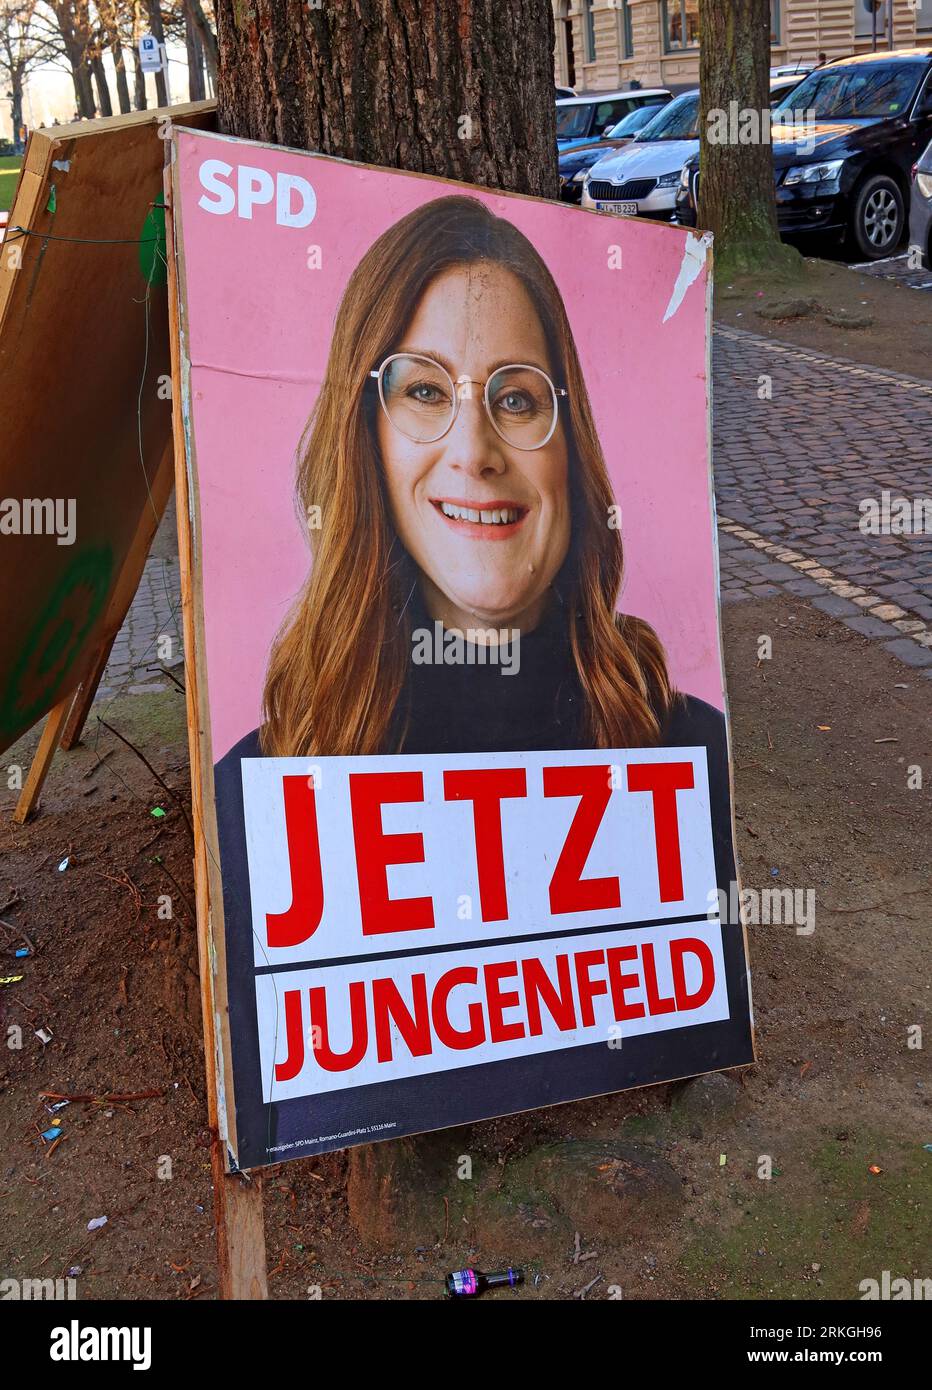 Jetzt - jetzt Jungenfeld Mainzer Stadtpolitiker, SPD-Politiker-Plakat - Mombacher Straße. 61, 55122 Mainz, Rheinland-Pfalz, Deutschland Stockfoto